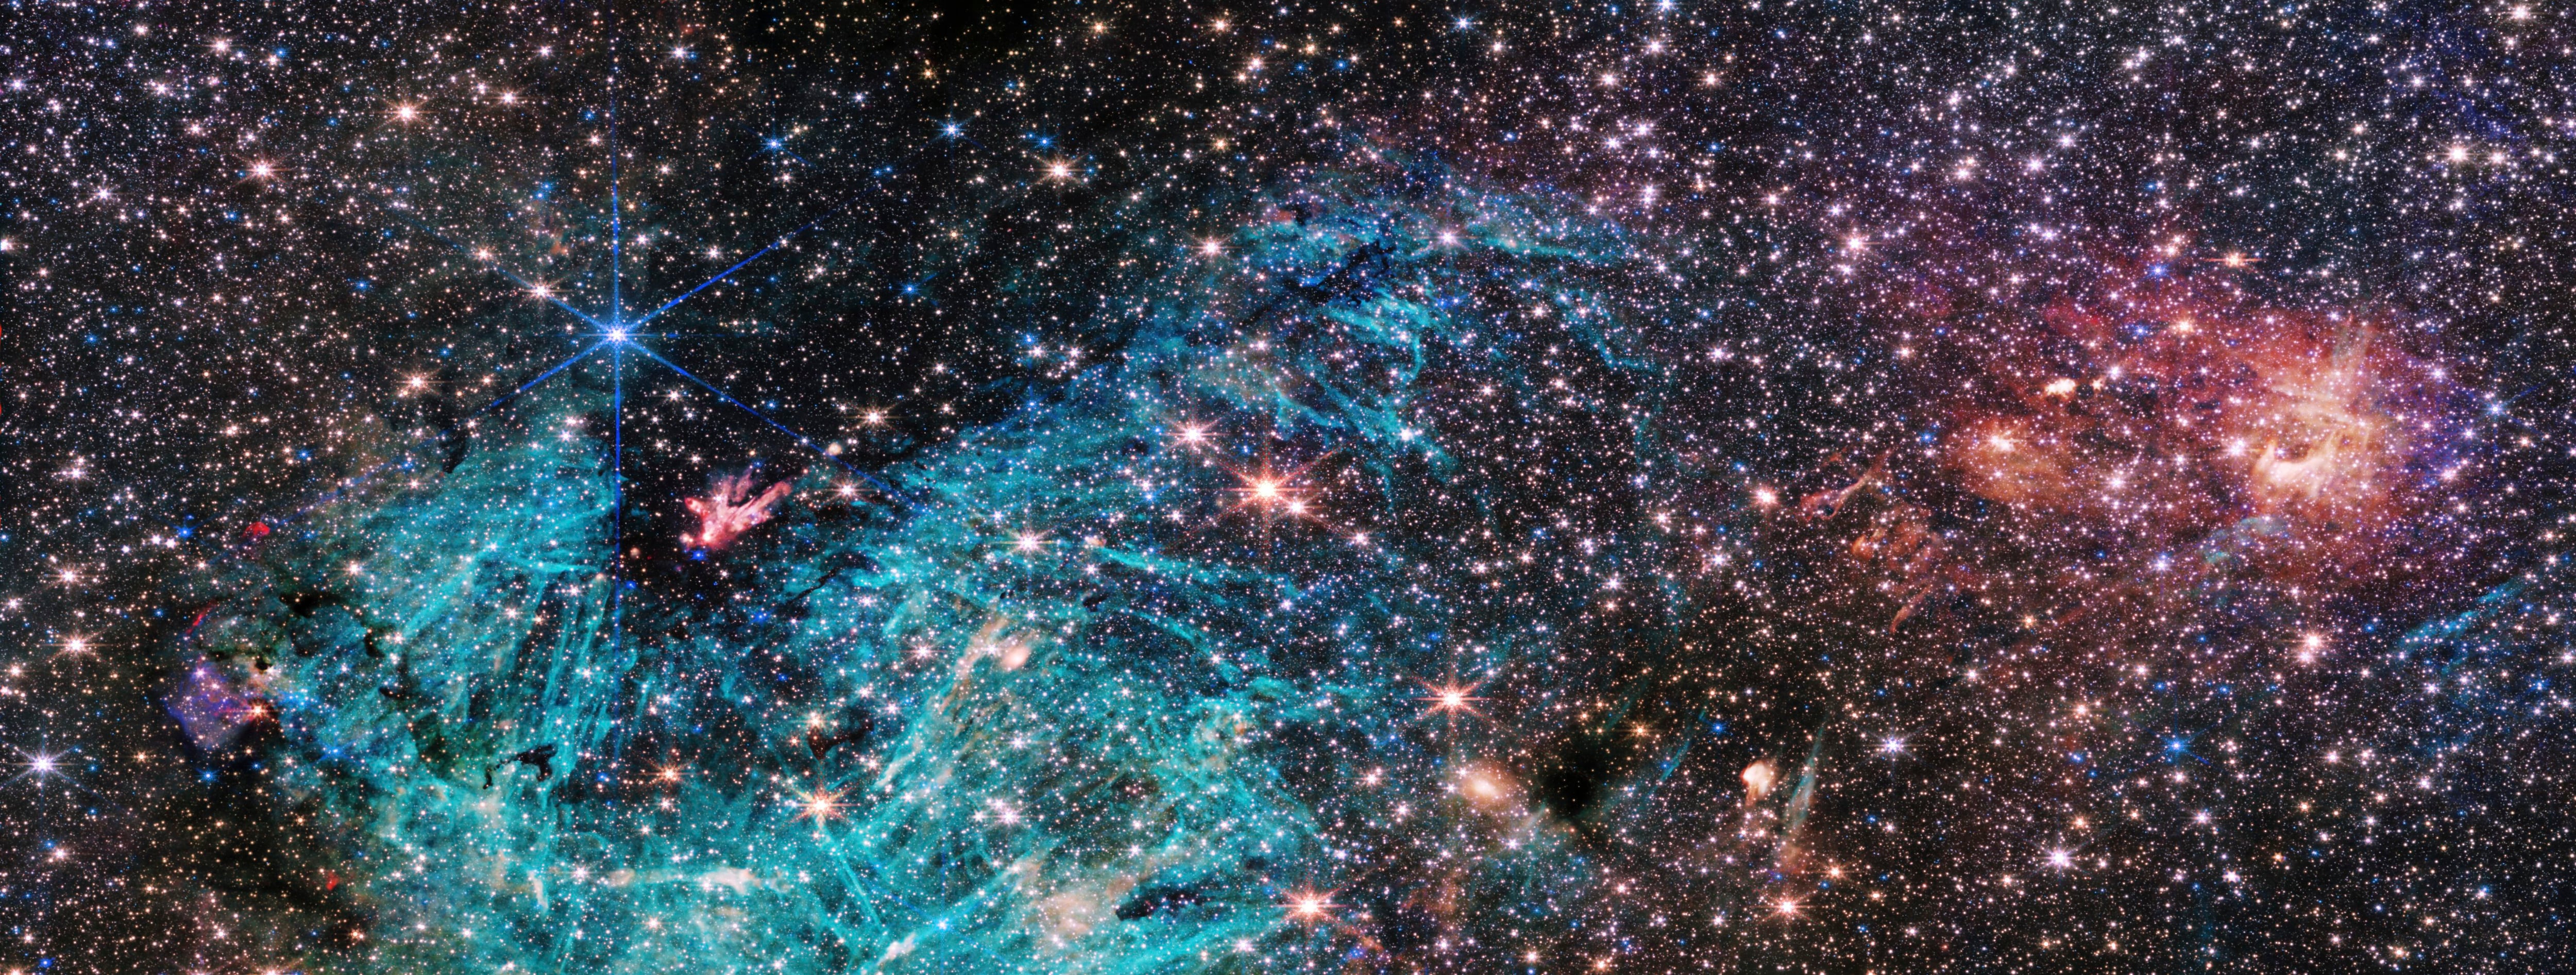 La última imagen del telescopio espacial James Webb muestra una porción del denso centro de nuestra galaxia con un detalle sin precedentes.EFE/NASA, ESA, CSA, STScI, S. Crowe (UVA)***SOLO USO EDITORIAL/SOLO DISPONIBLE PARA ILUSTRAR LA NOTICIA QUE ACOMPAÑA (CRÉDITO OBLIGATORIO)***
